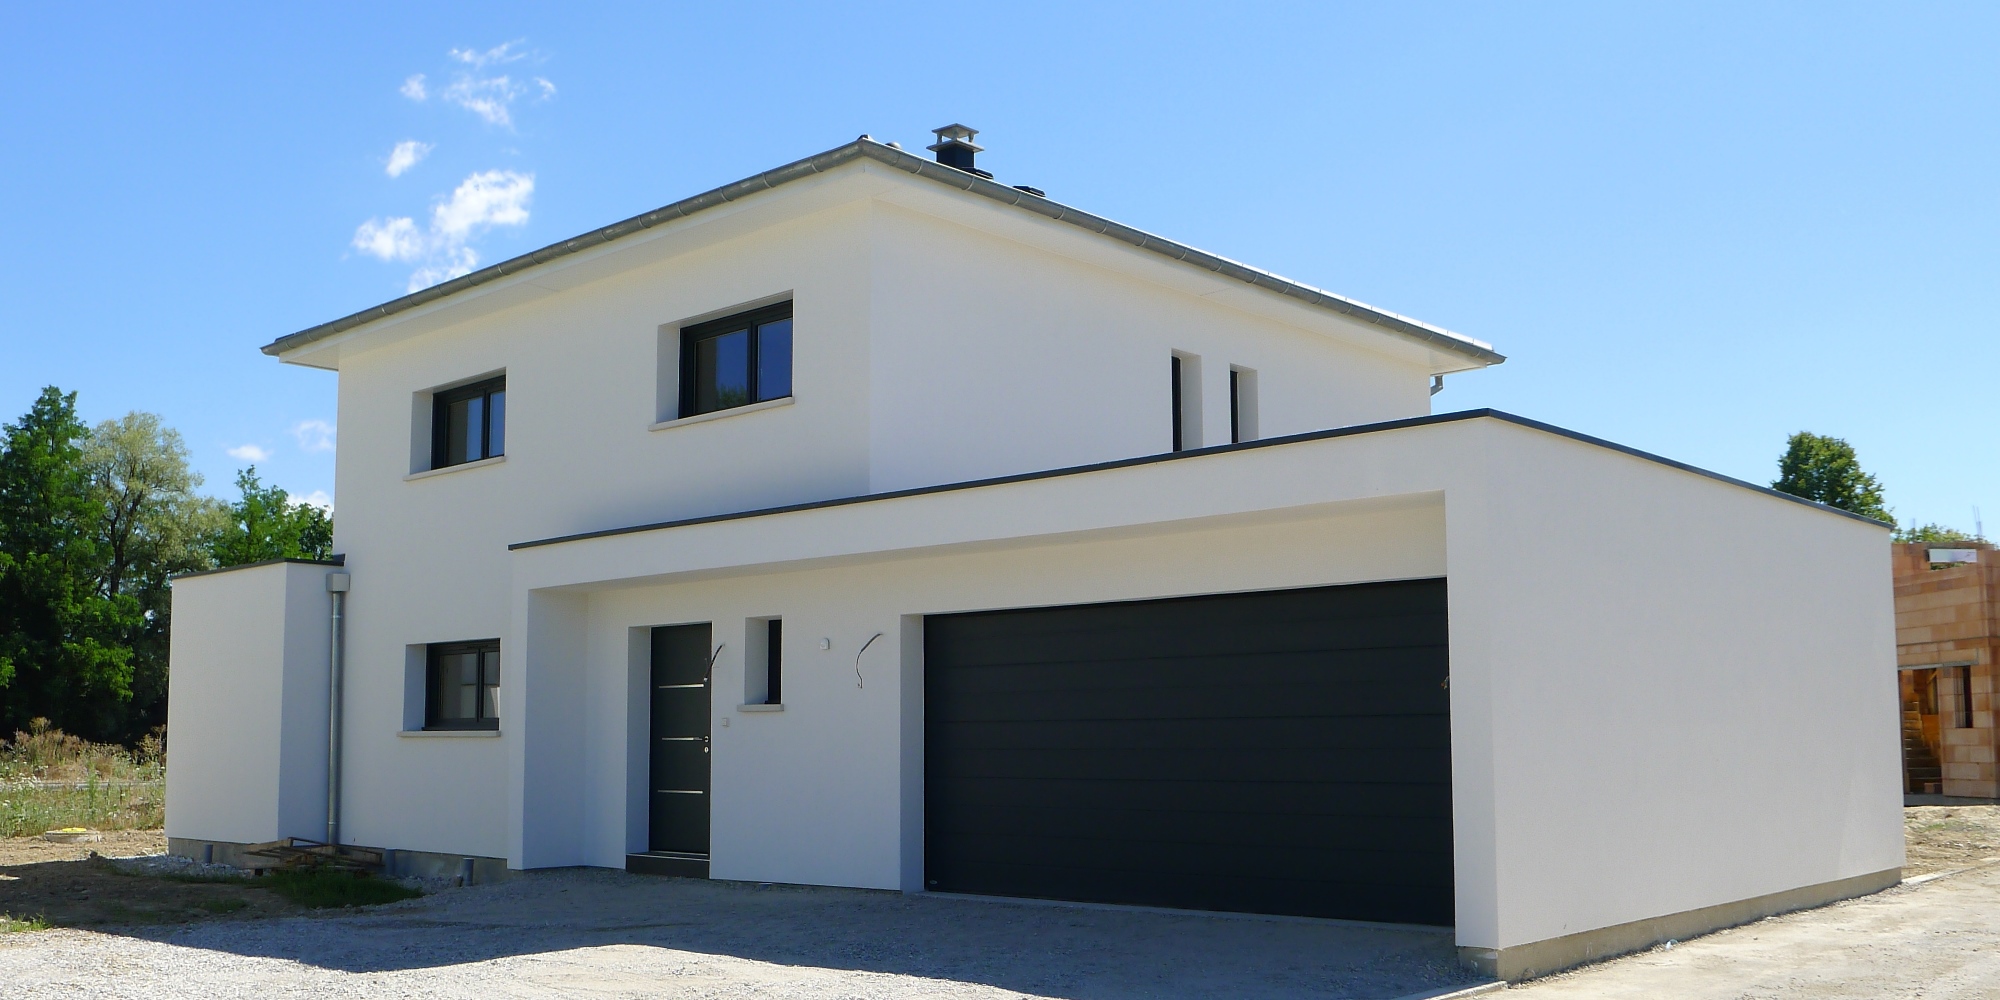 Programme immobilier neuf Maison Neuve Individuelle à Algolsheim